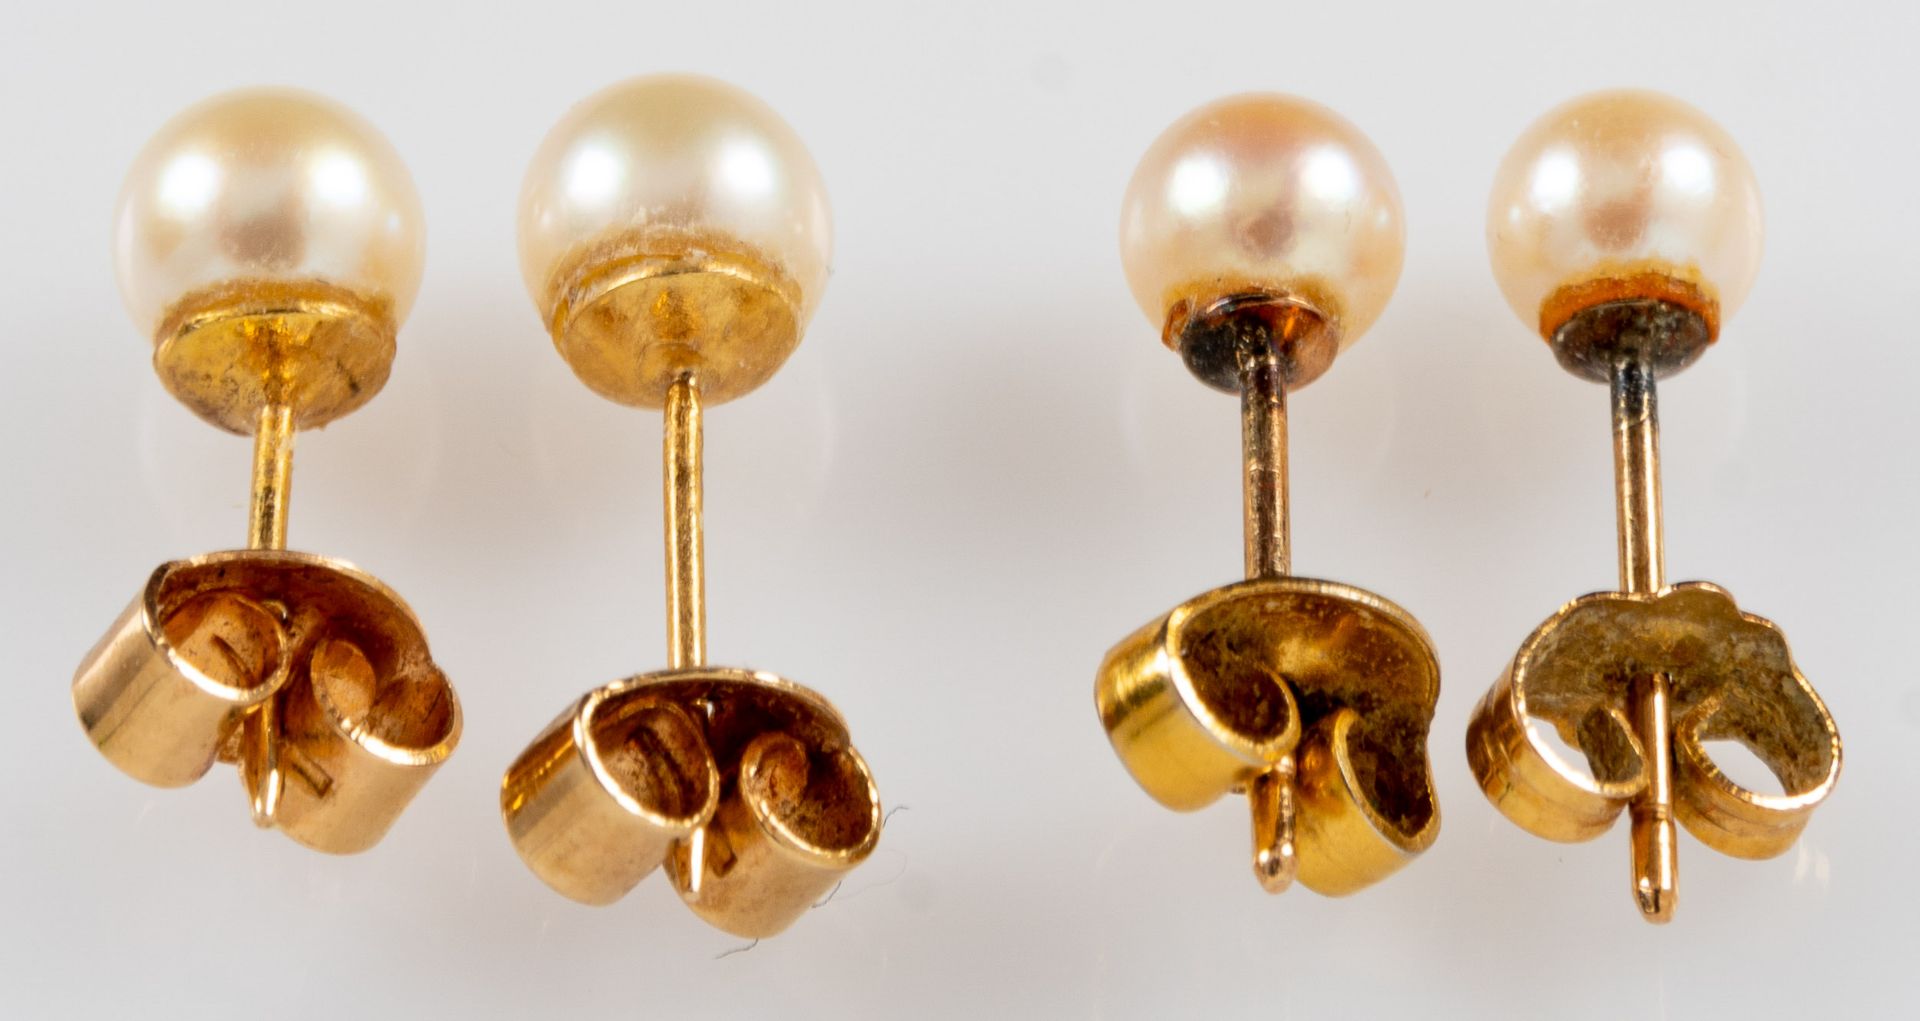 2 Paar Ohrstecker mit Perlenbesatz, 1x 585er Gelbgoldfassung, 1x vergoldete Fassung. Verschieden sc - Image 3 of 5